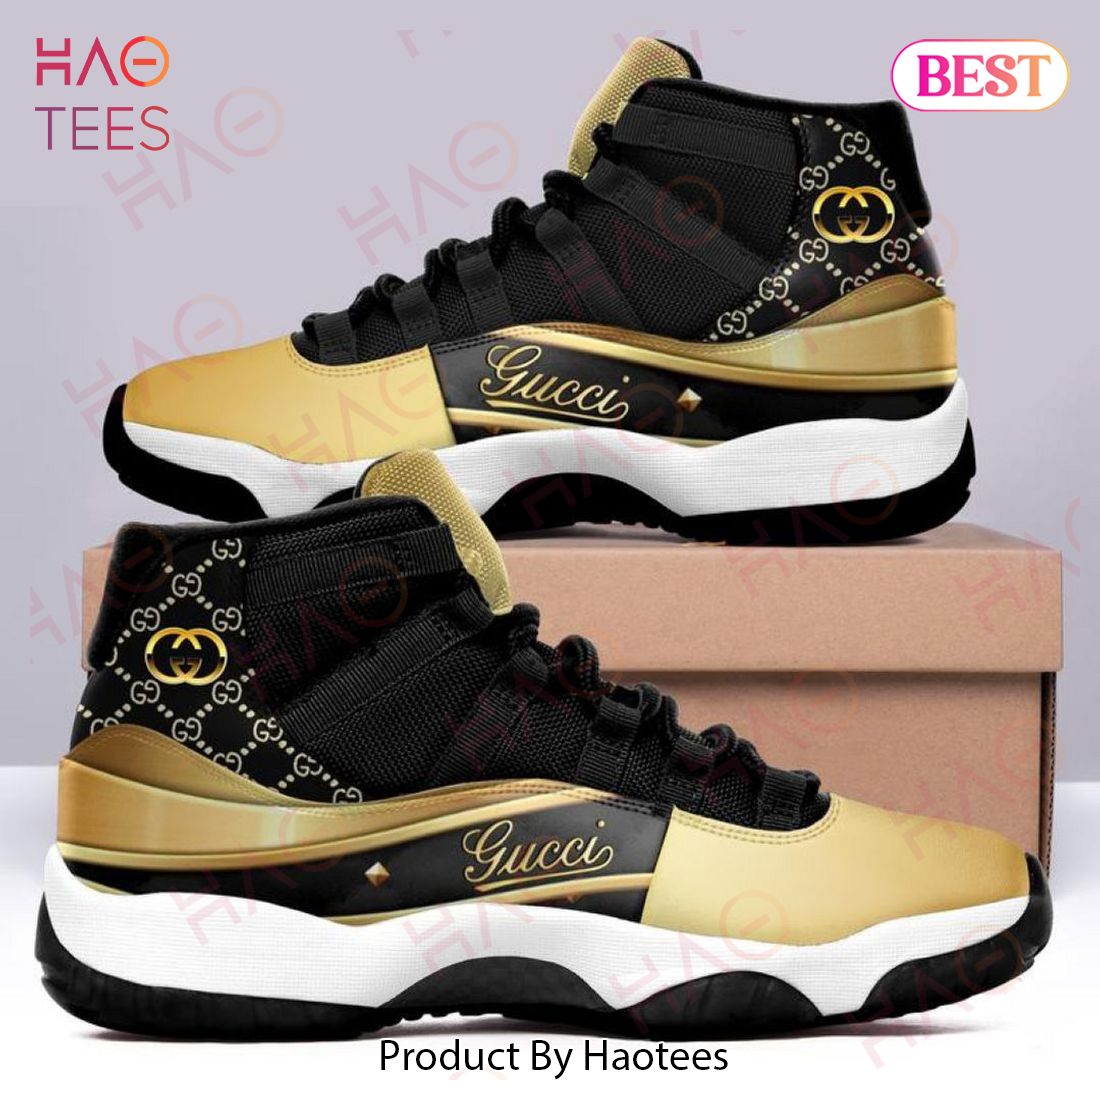 Gucci Black Gold Air Jordan 11 Sneakers Shoes 0360